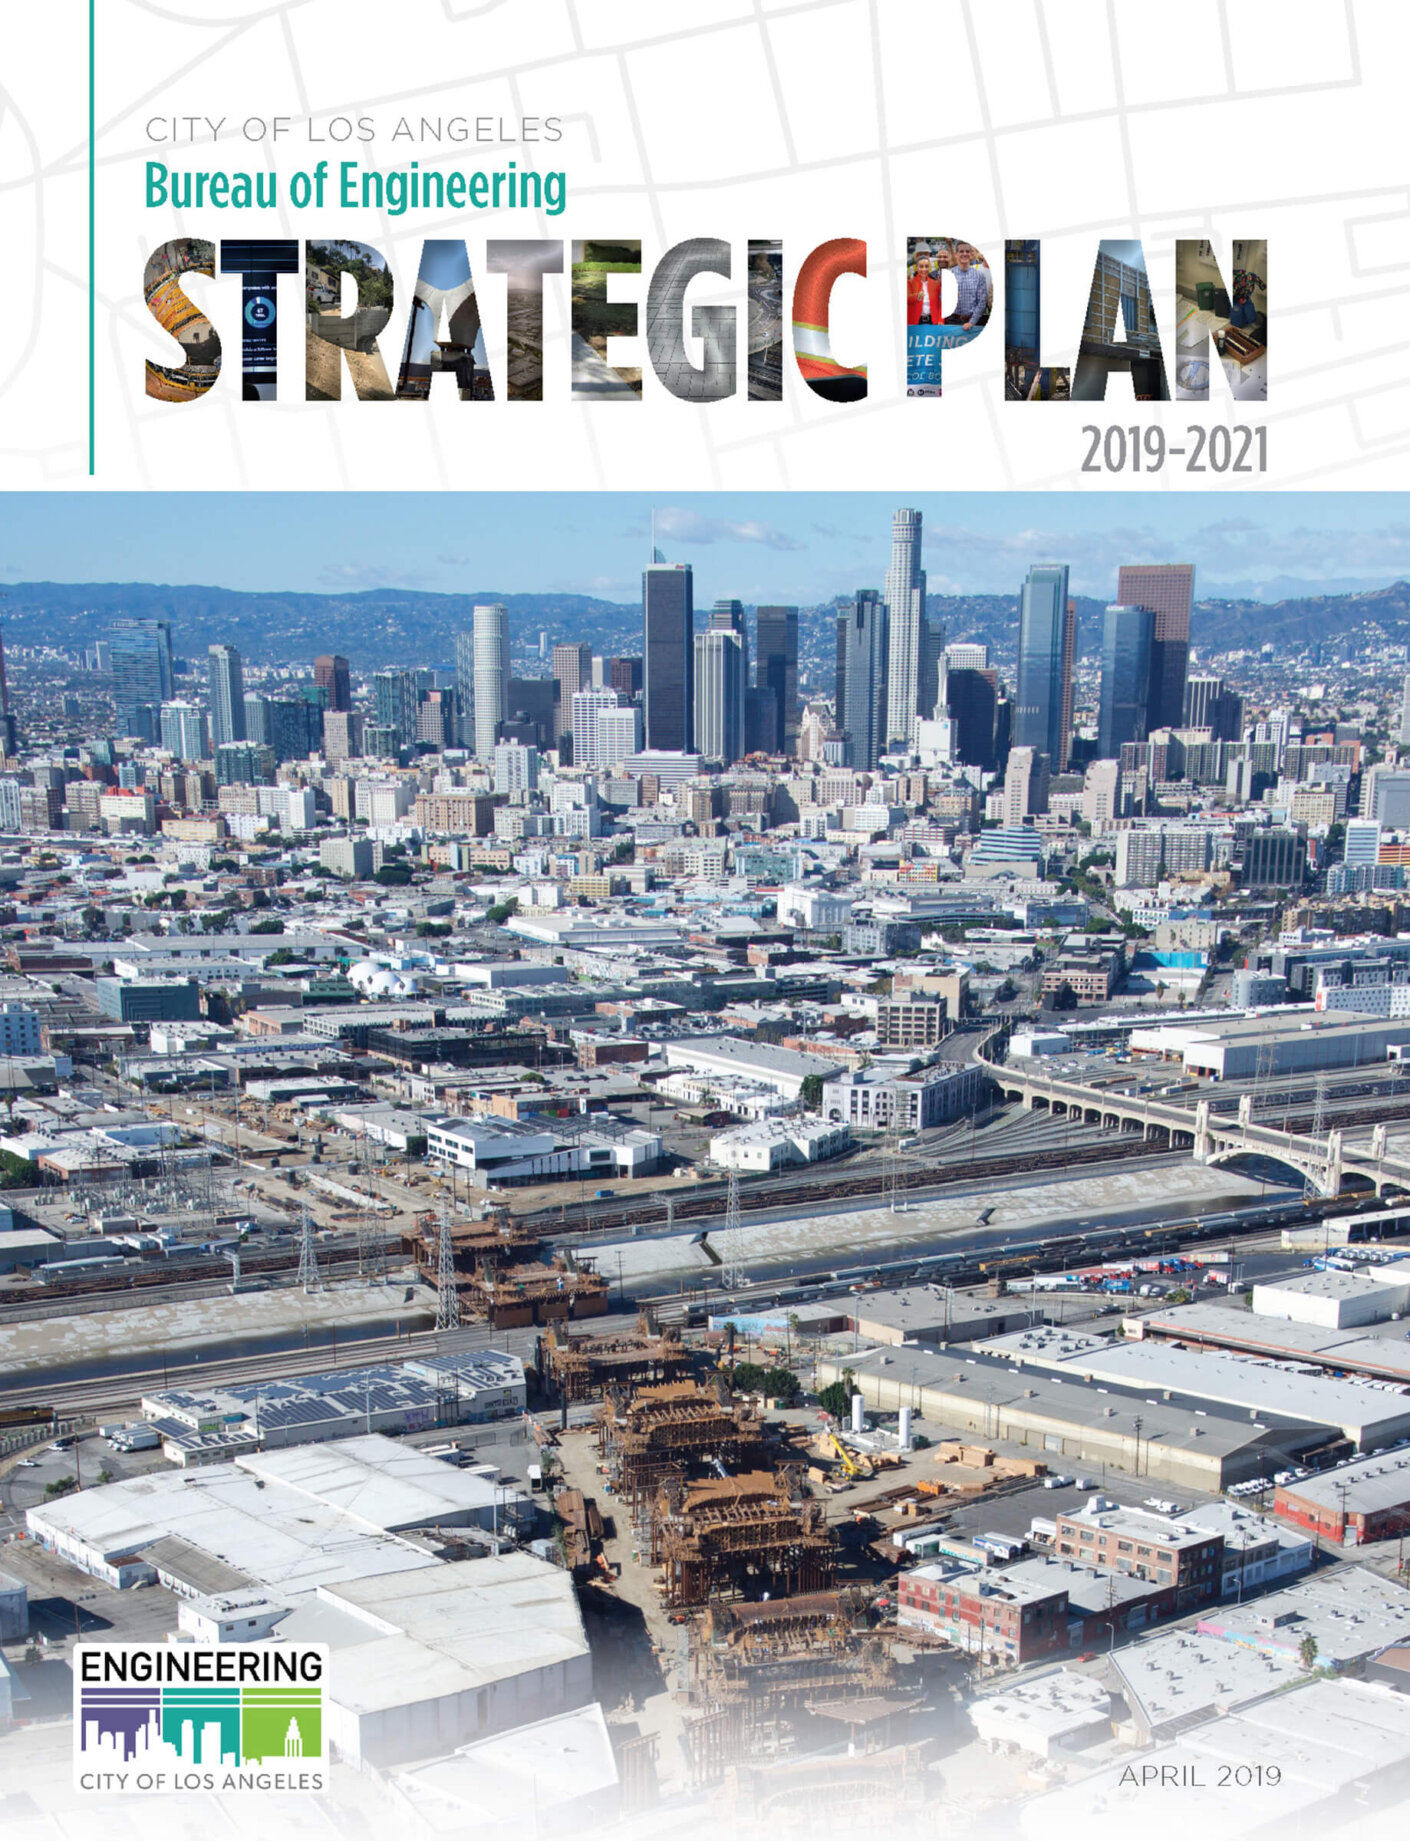 LA Bureau of Engineering Strategic Plan